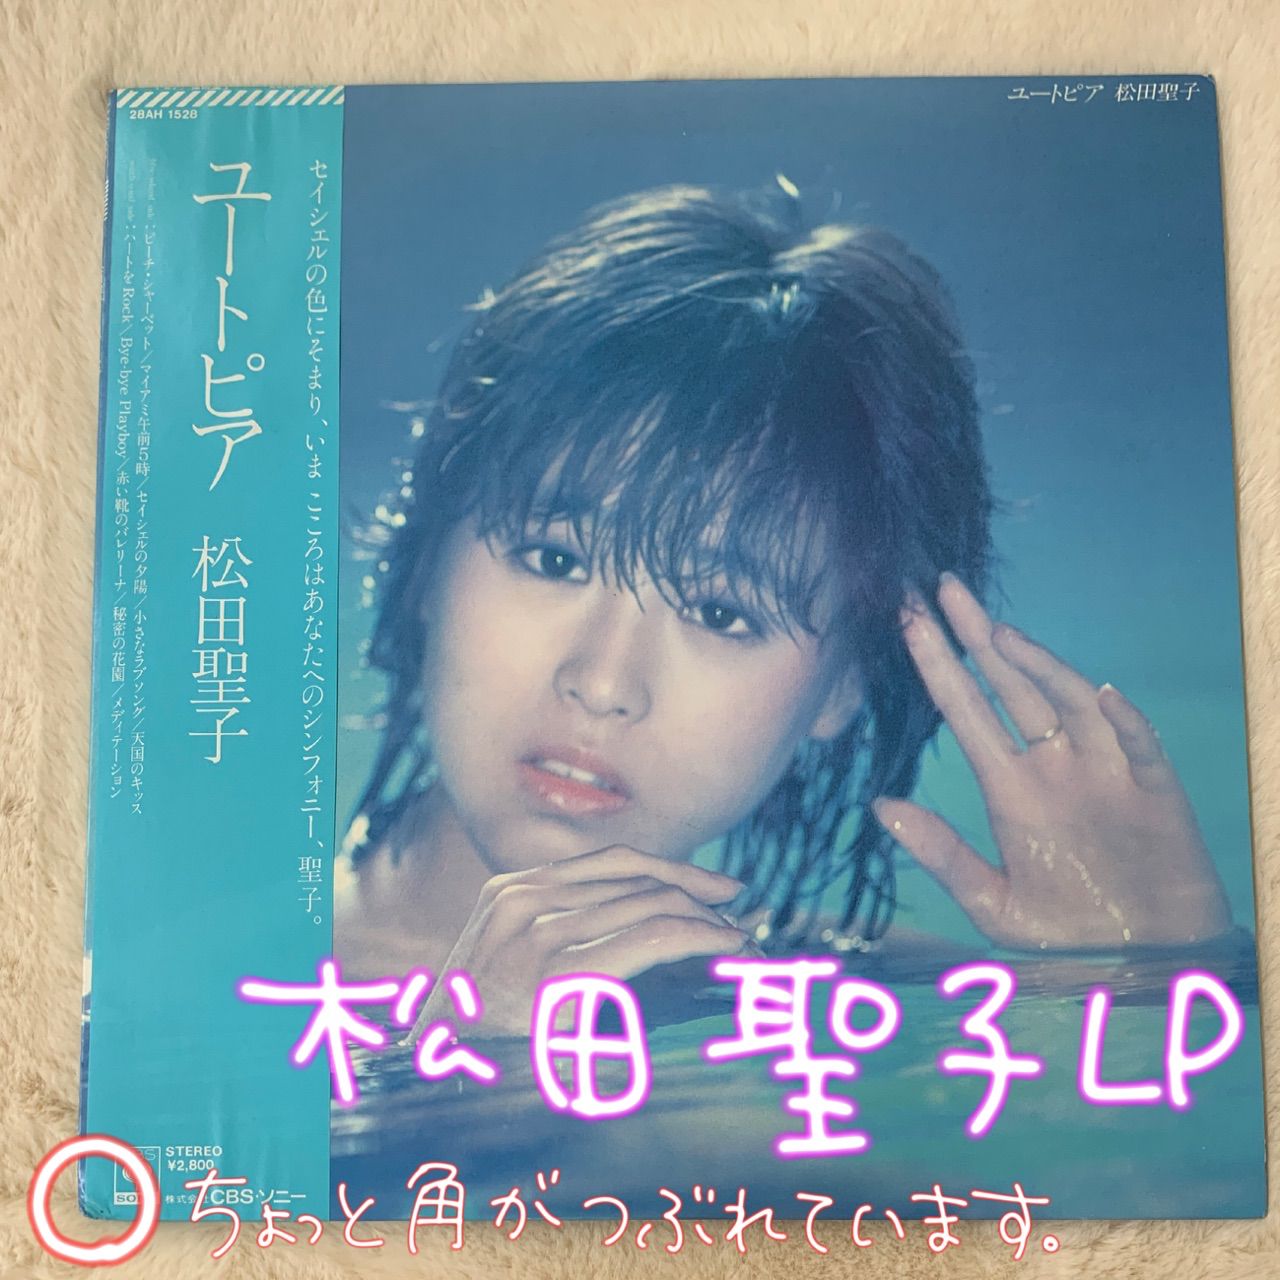 松田 聖子 CANARY LP - 邦楽